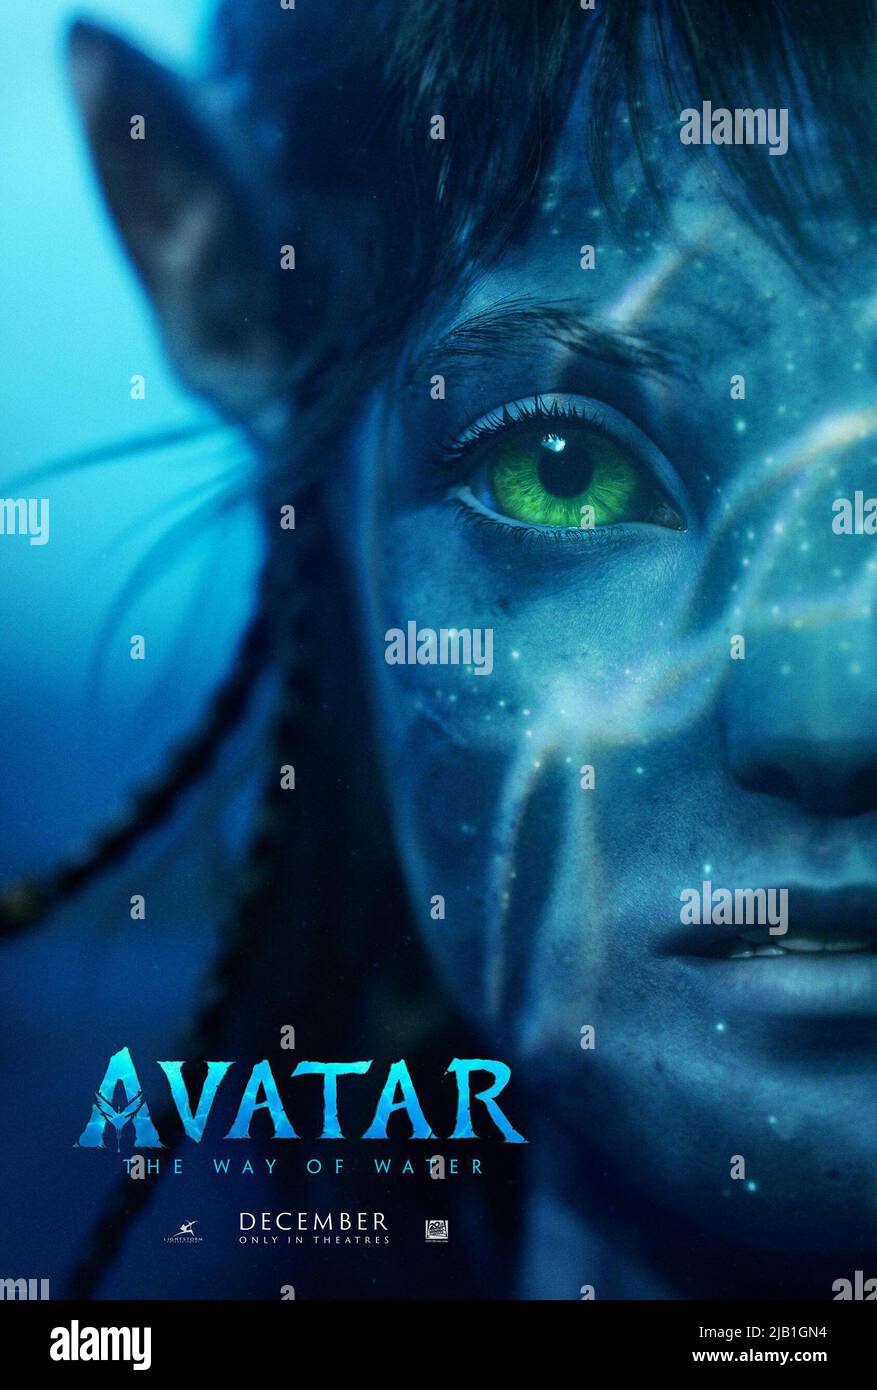 ดูหนังออนไลน์ฟรี Avatar 2 The Way of Water (2022) อวตาร 2 วิถีแห่งสายน้ำ หนังเต็มเรื่อง หนังมาสเตอร์ ดูหนังHD ดูหนังออนไลน์ ดูหนังใหม่